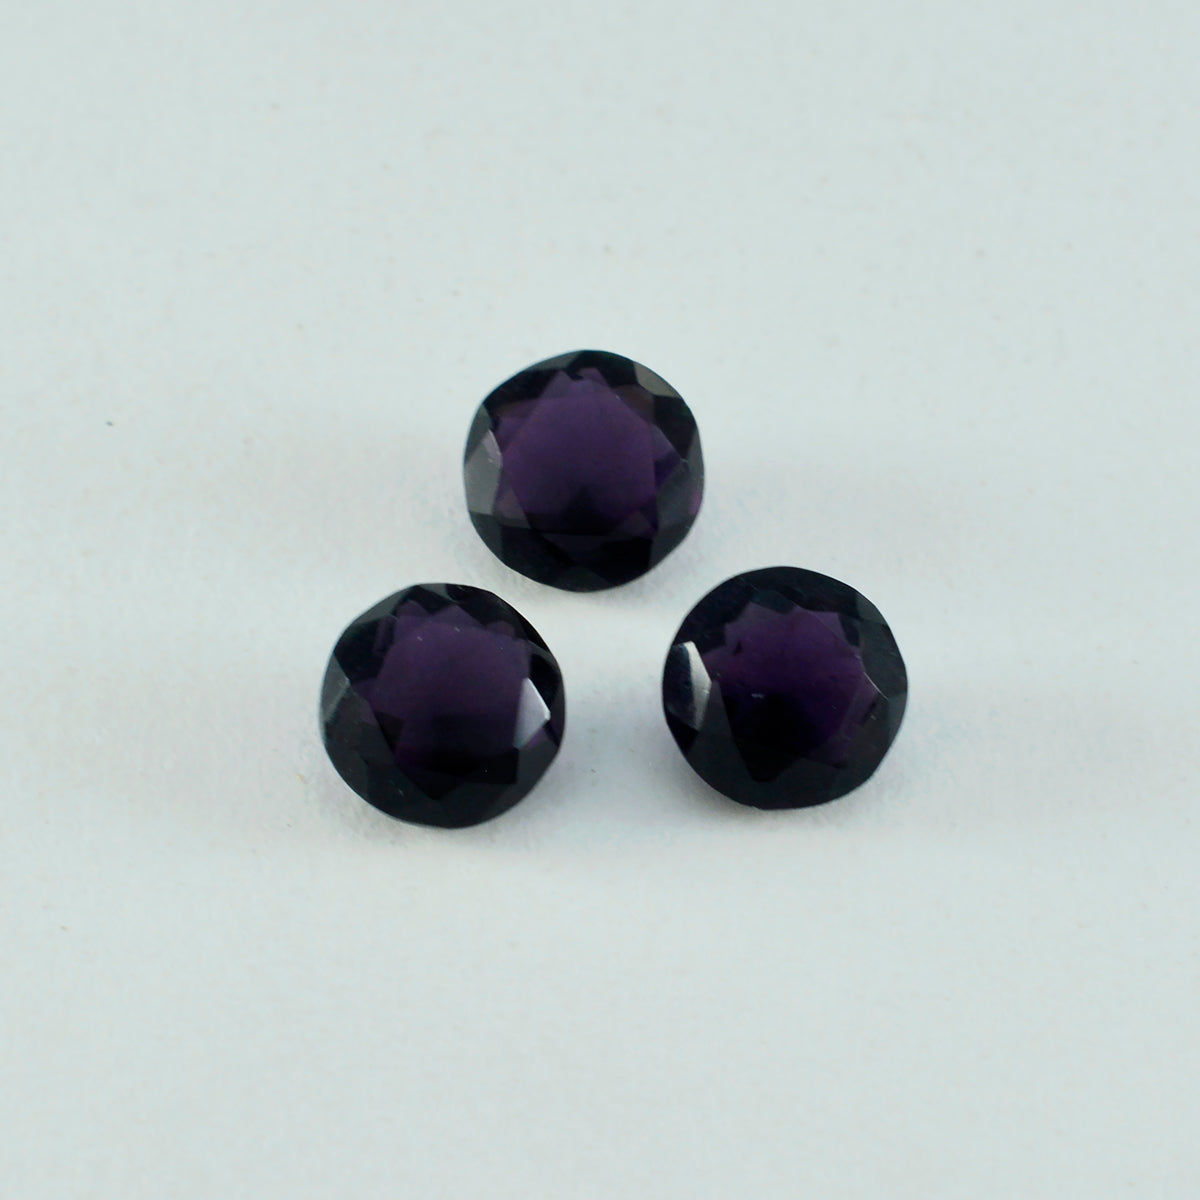 riyogems 1pc améthyste violette cz facettes 11x11 mm forme ronde jolies pierres précieuses de qualité